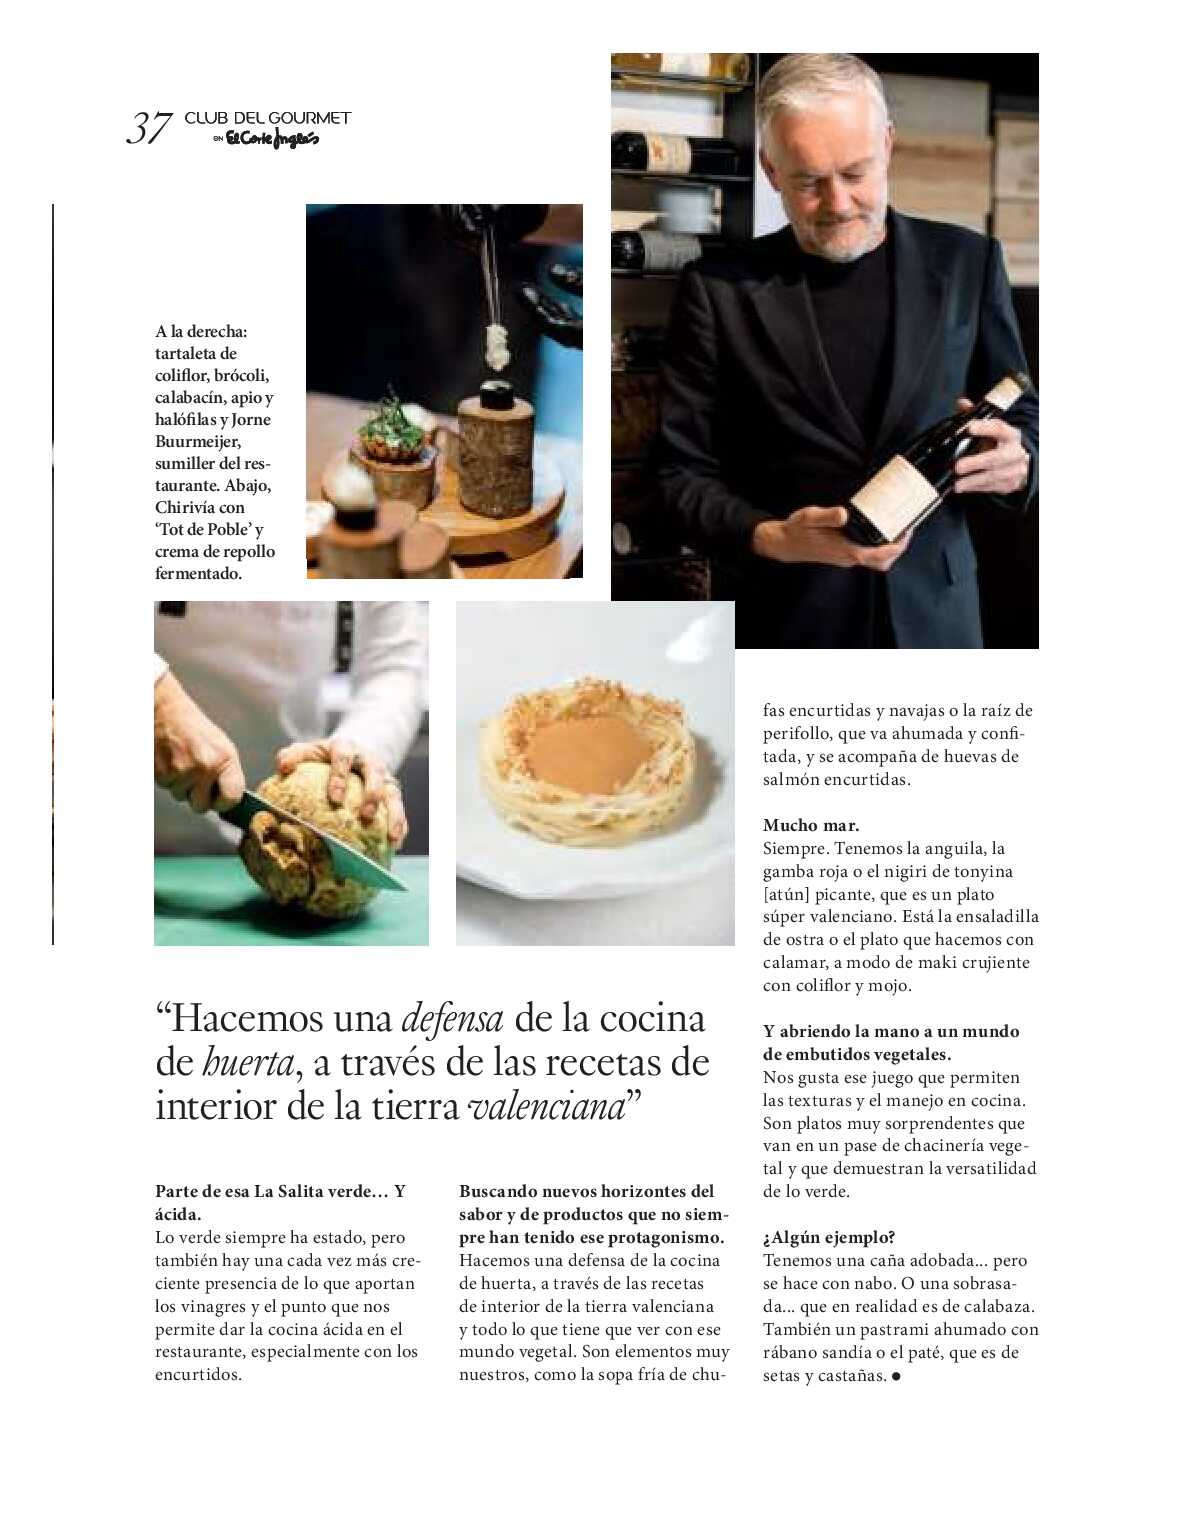 Gourmet magazine El Corte Inglés. Página 37